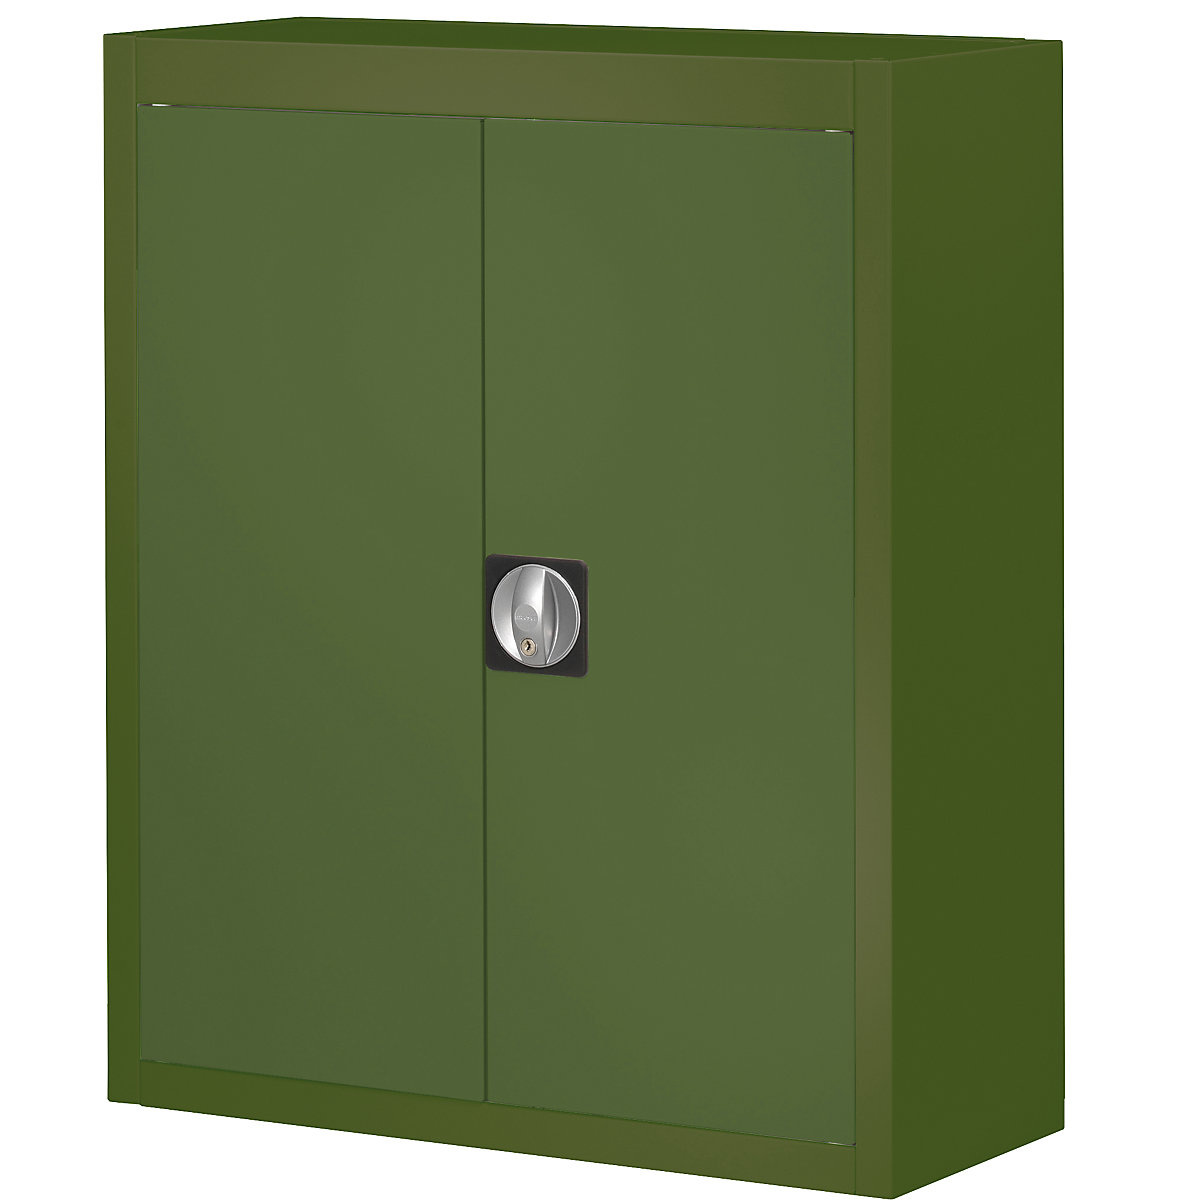 Skladiščna omara, brez odprtih skladiščnih posod – mauser, VxŠxG 820 x 680 x 280 mm, ena barva, zelena, od 3 kosov-4